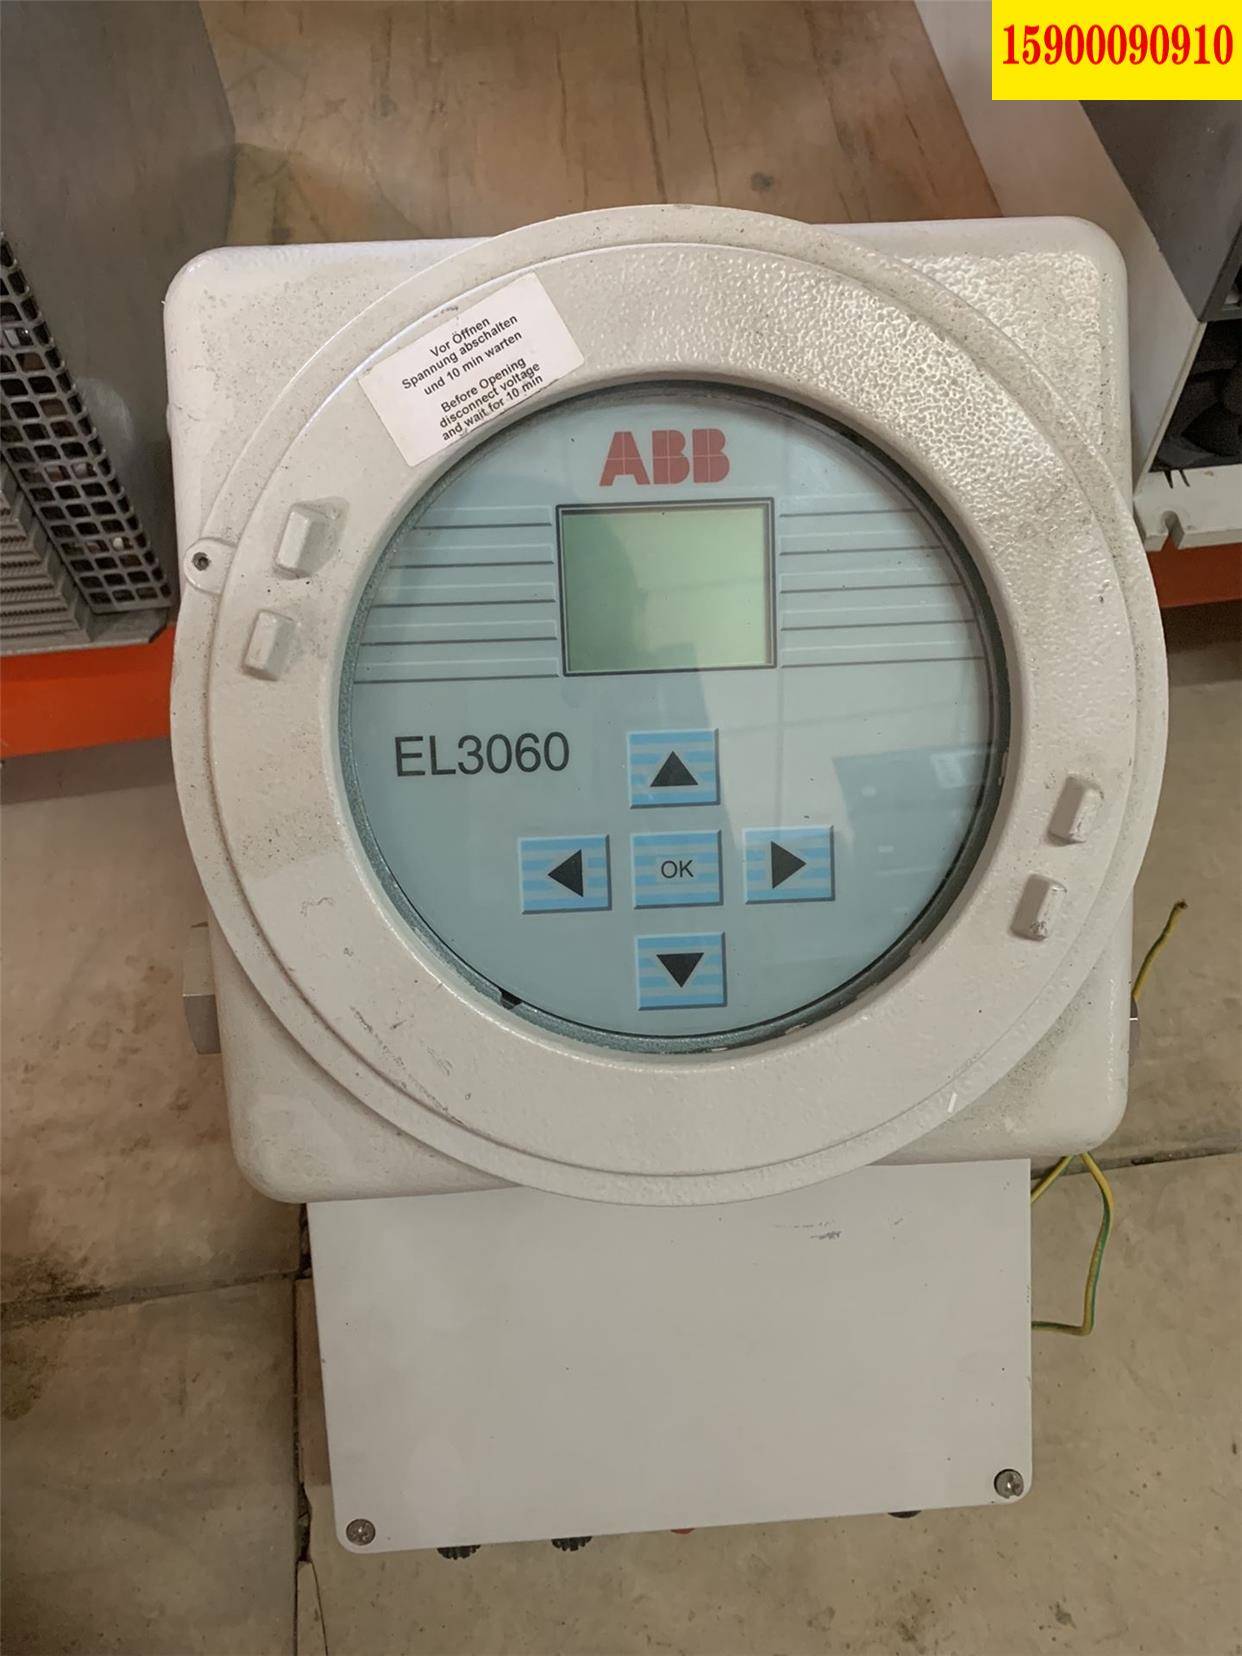 工控议价ABB分析仪EL3060.工厂仓库替换下来的,并非正常.